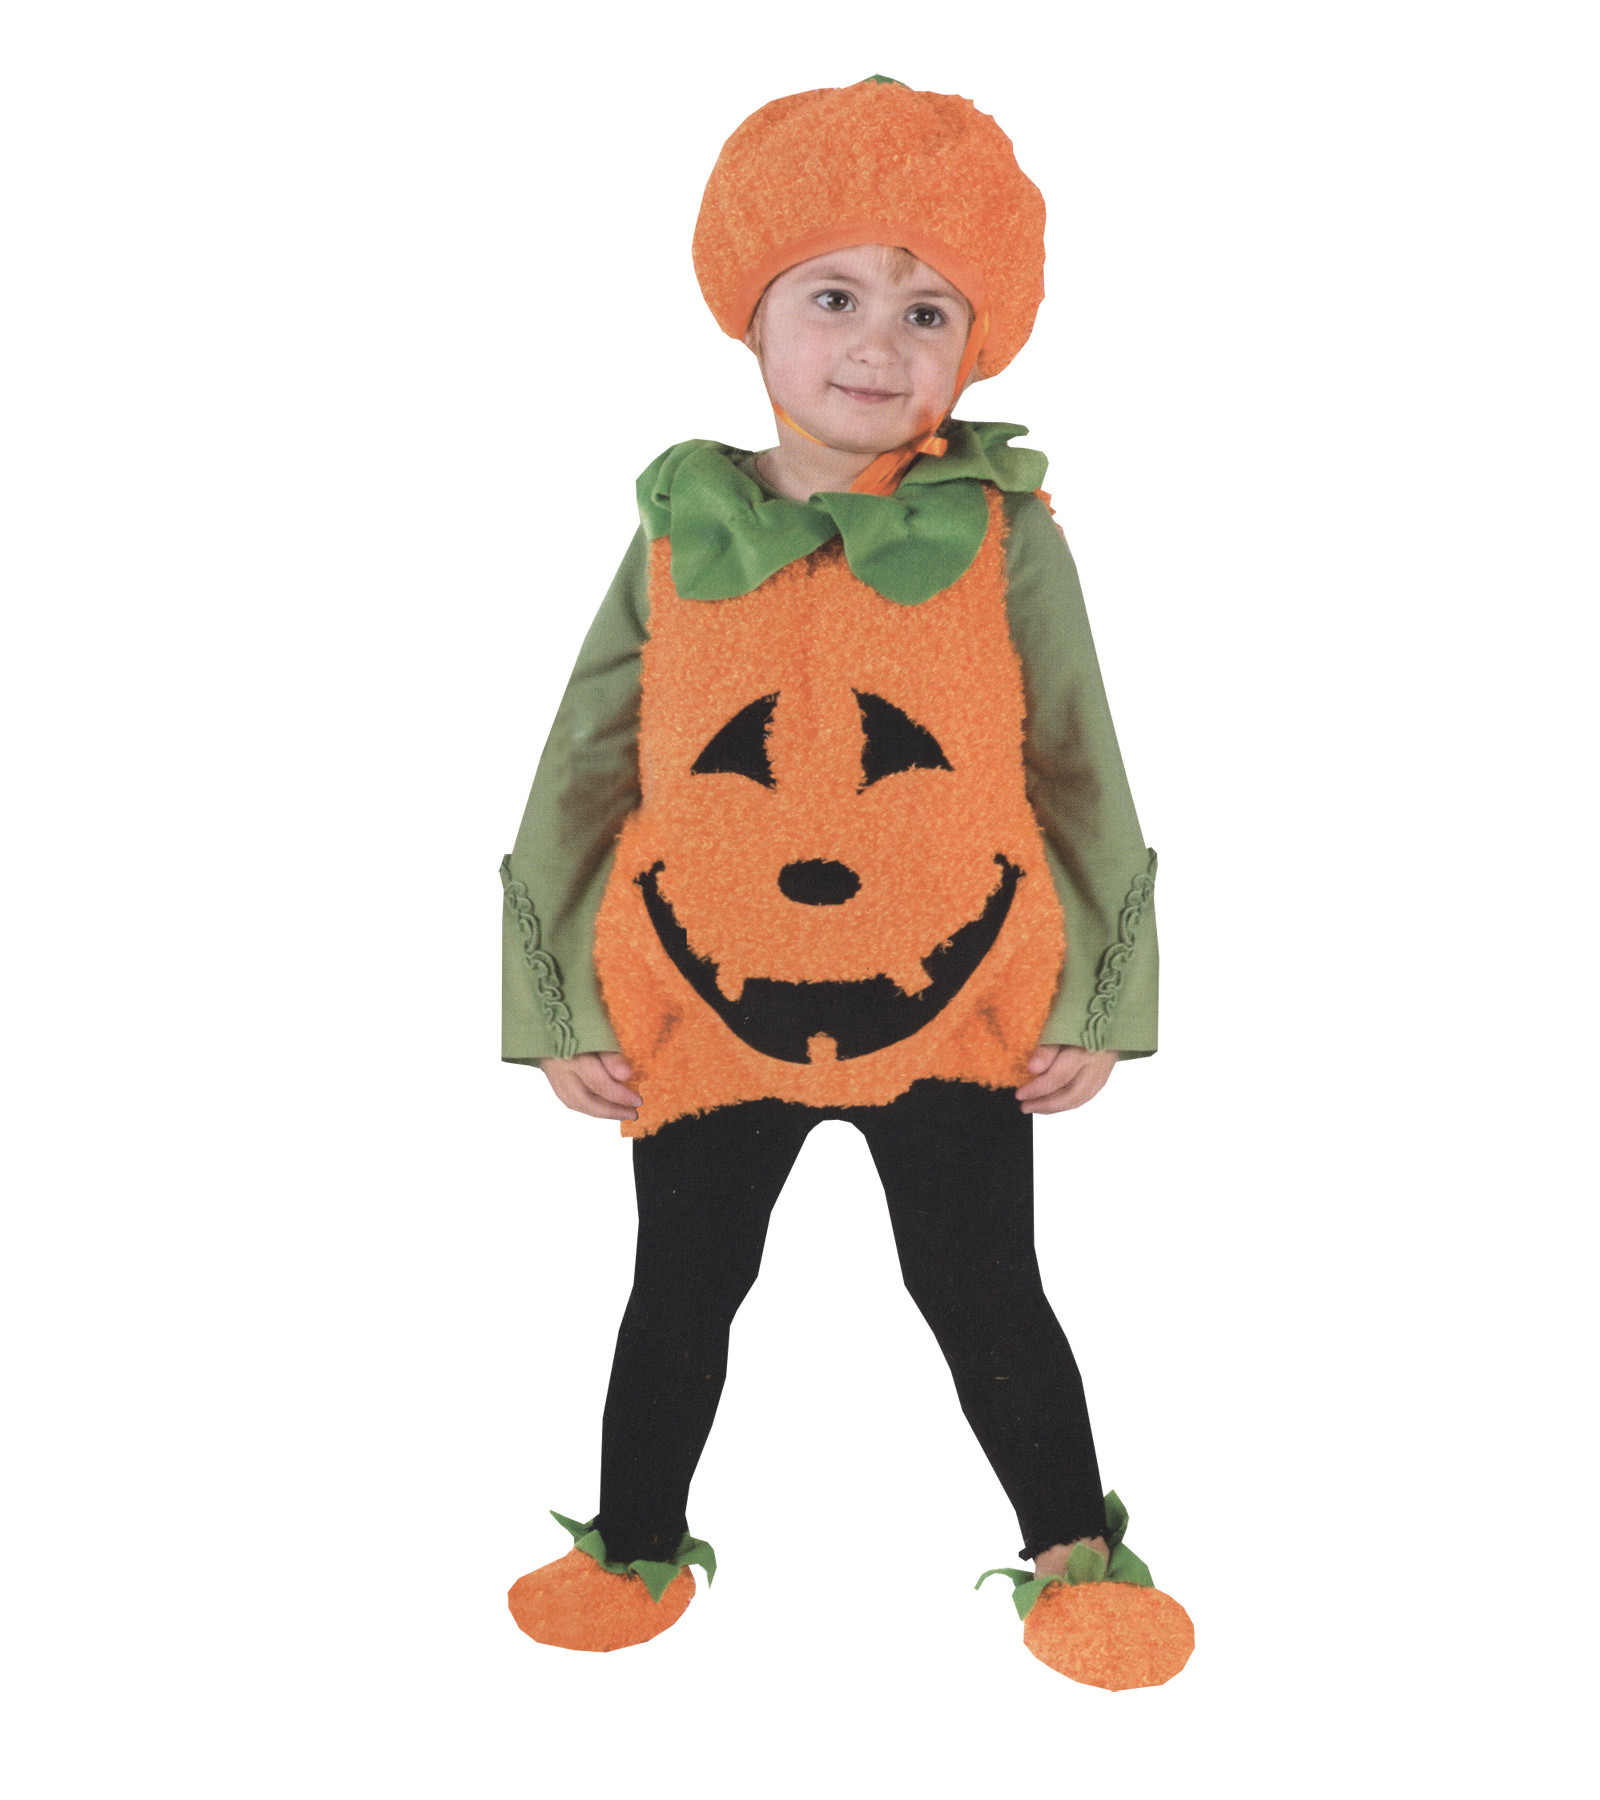 Pumpkin Pie Halloween Costume
 Infant Pumpkin Cutie Pie Halloween Costume Size 1T 2T